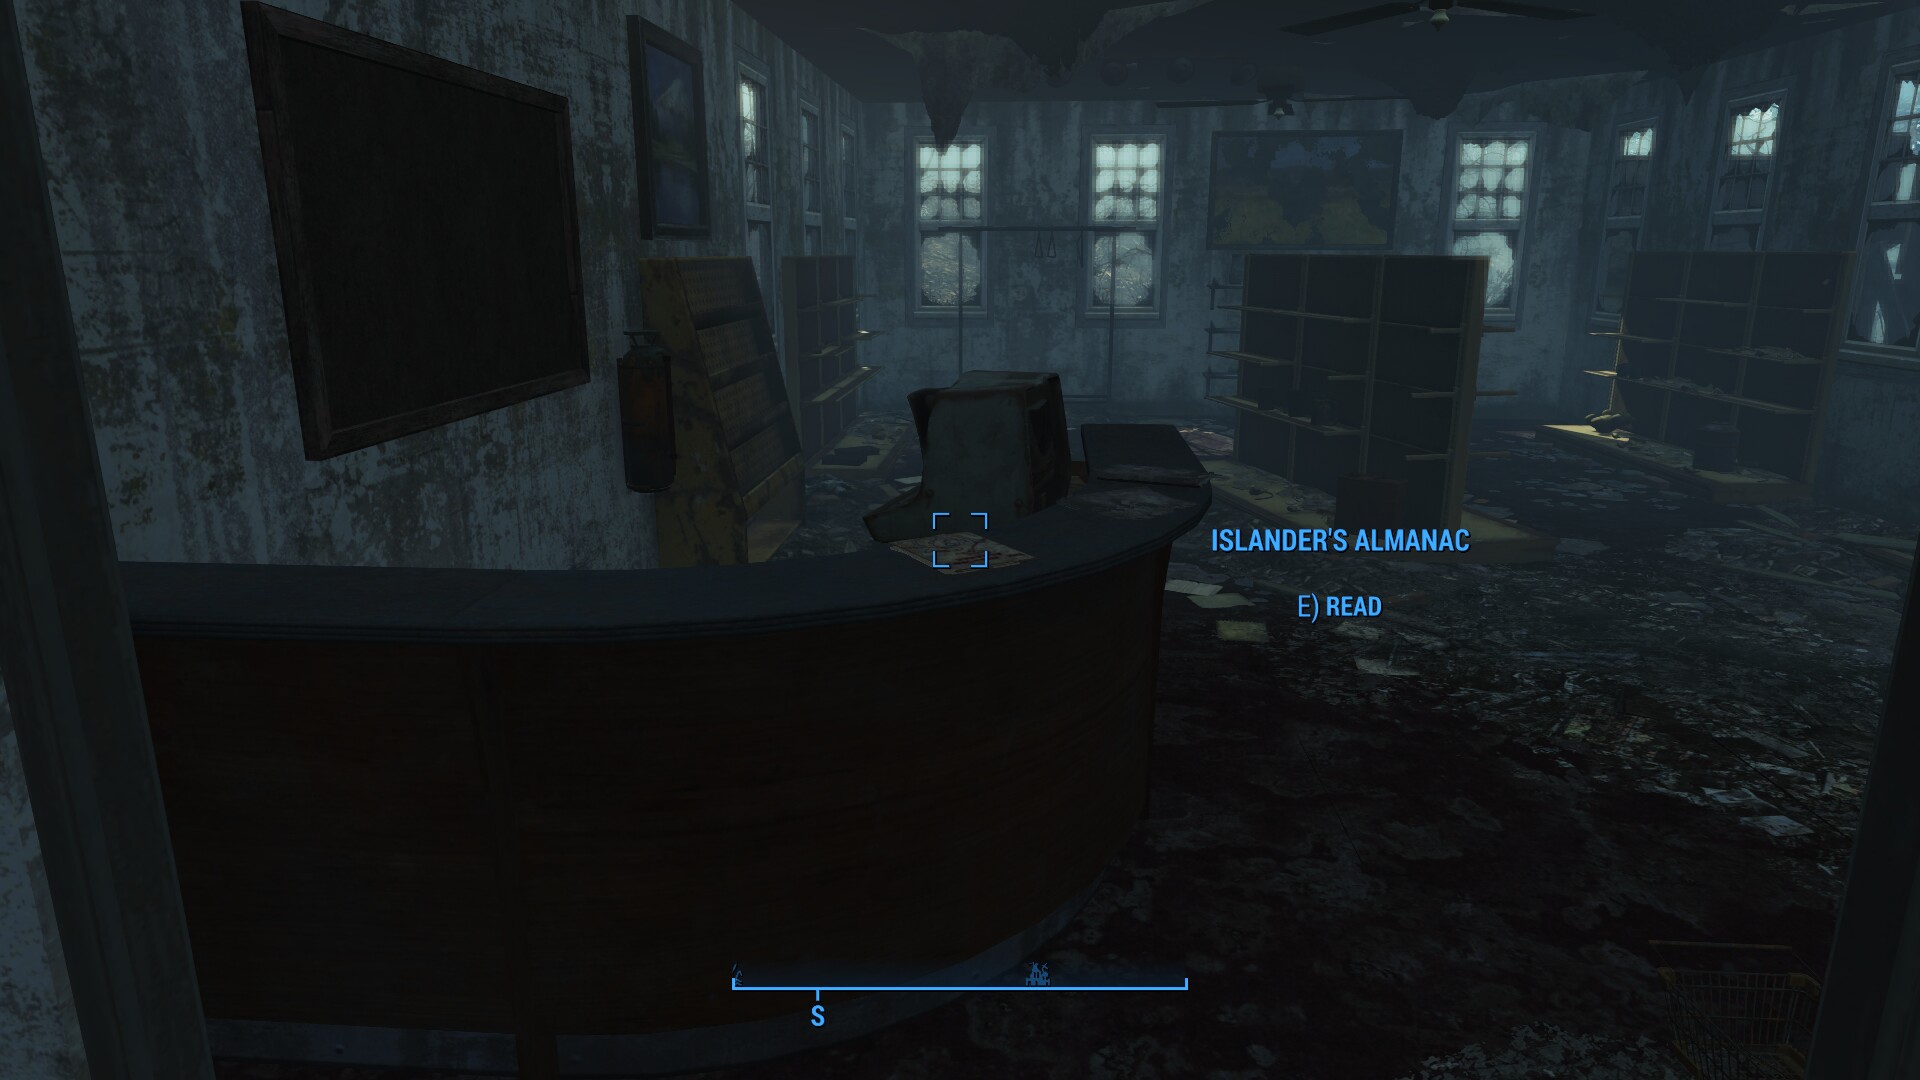 Fallout 4 far harbor альманах островитянина фото 8